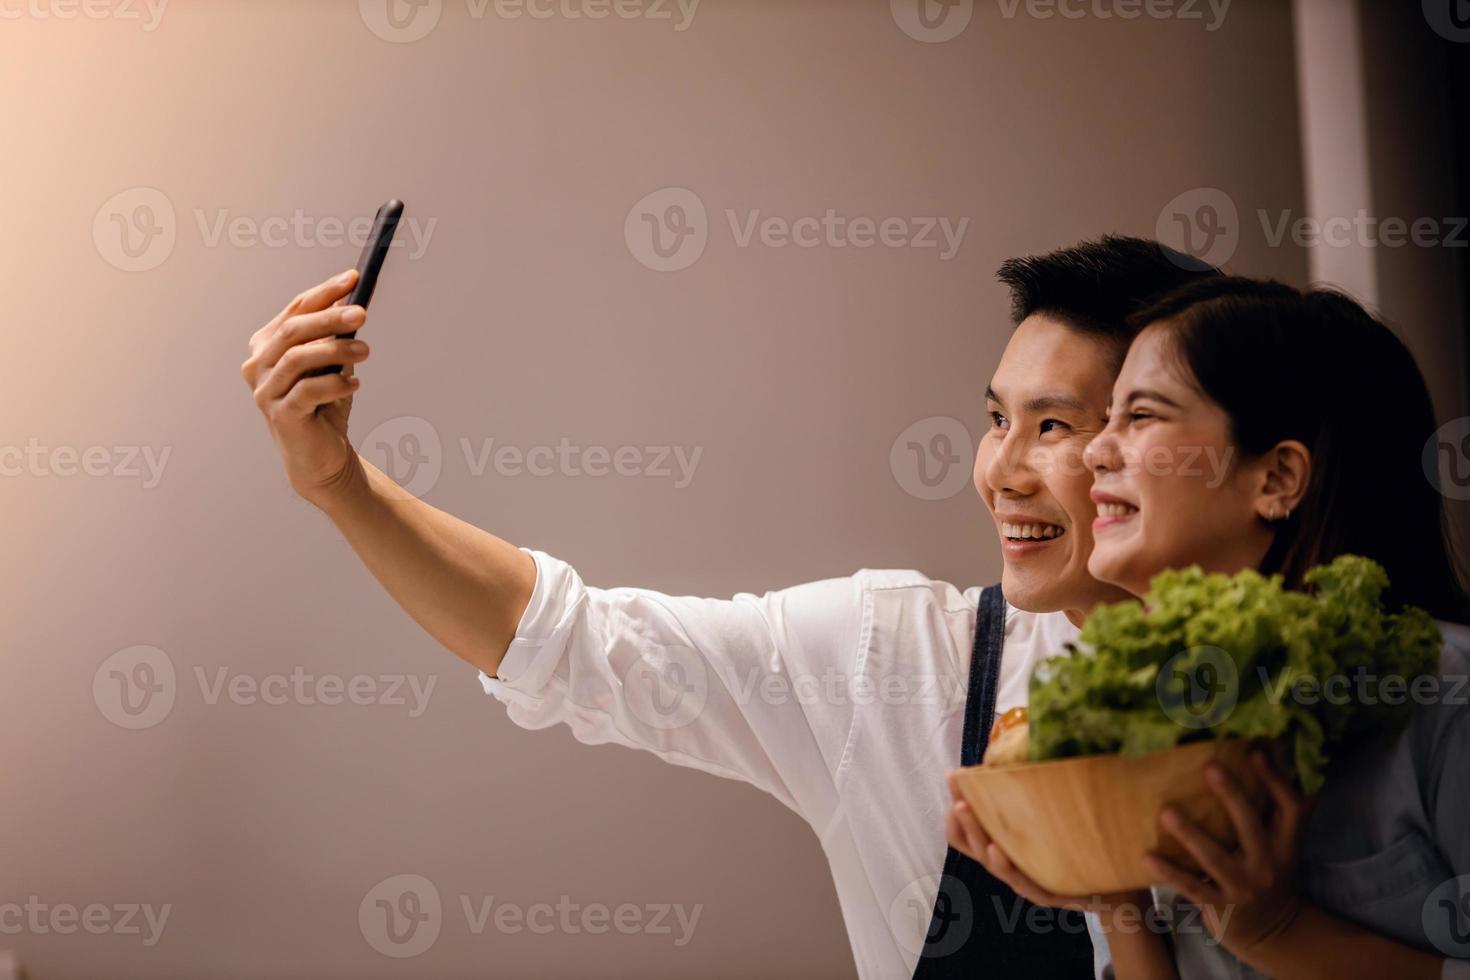 een glimlachen paar van mannetje en vrouw gebruik makend van telefoon in de keuken. nemen selfie of leven streaming via smartphone terwijl voorbereidingen treffen een veganistisch voedsel. modern gezond levensstijl concept. Koken Bij huis samen foto